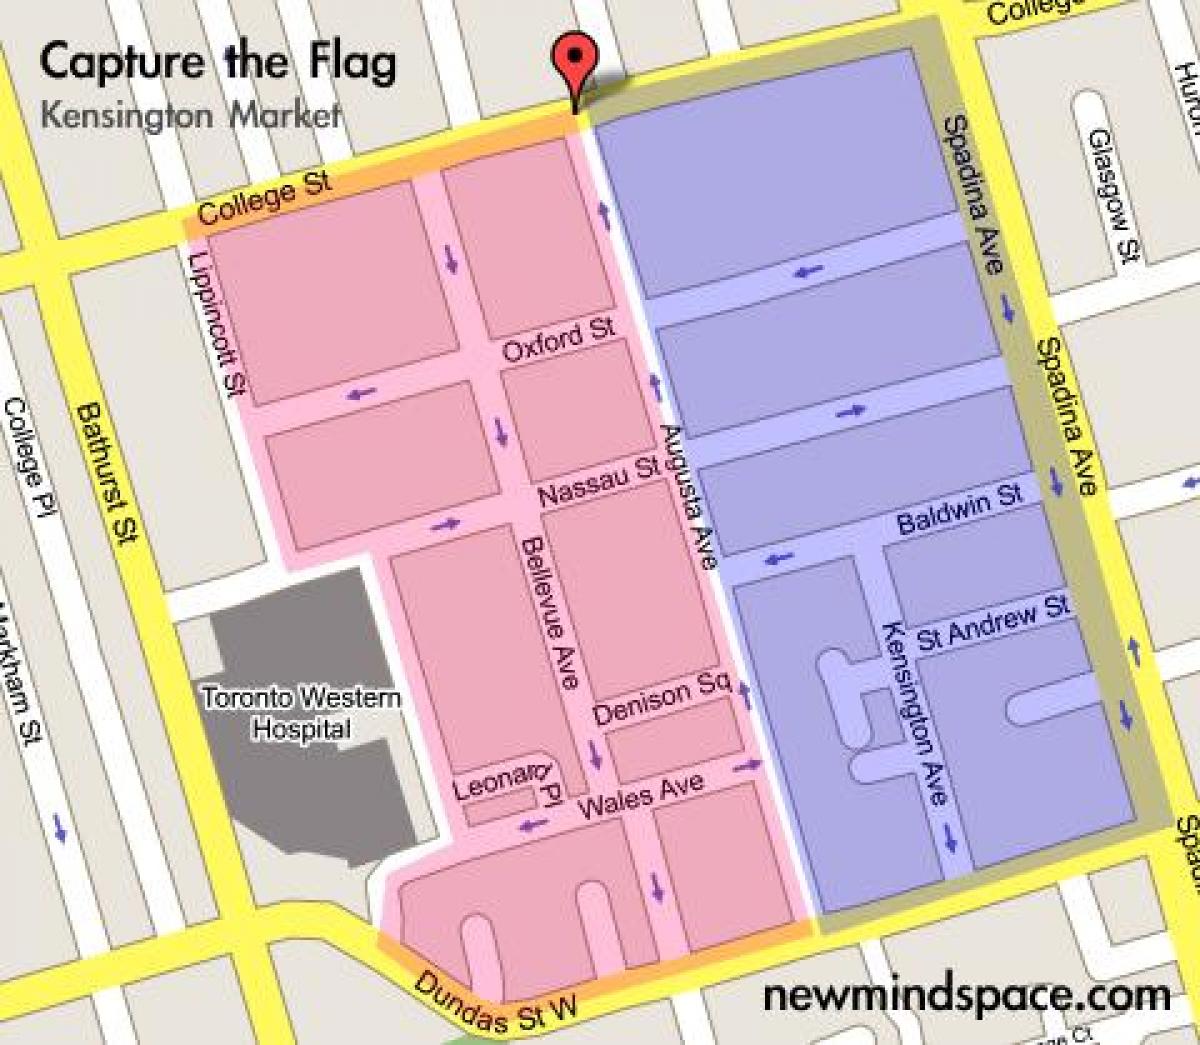 Χάρτης του Κένσινγκτον και Αγορά της Πόλης του Τορόντο